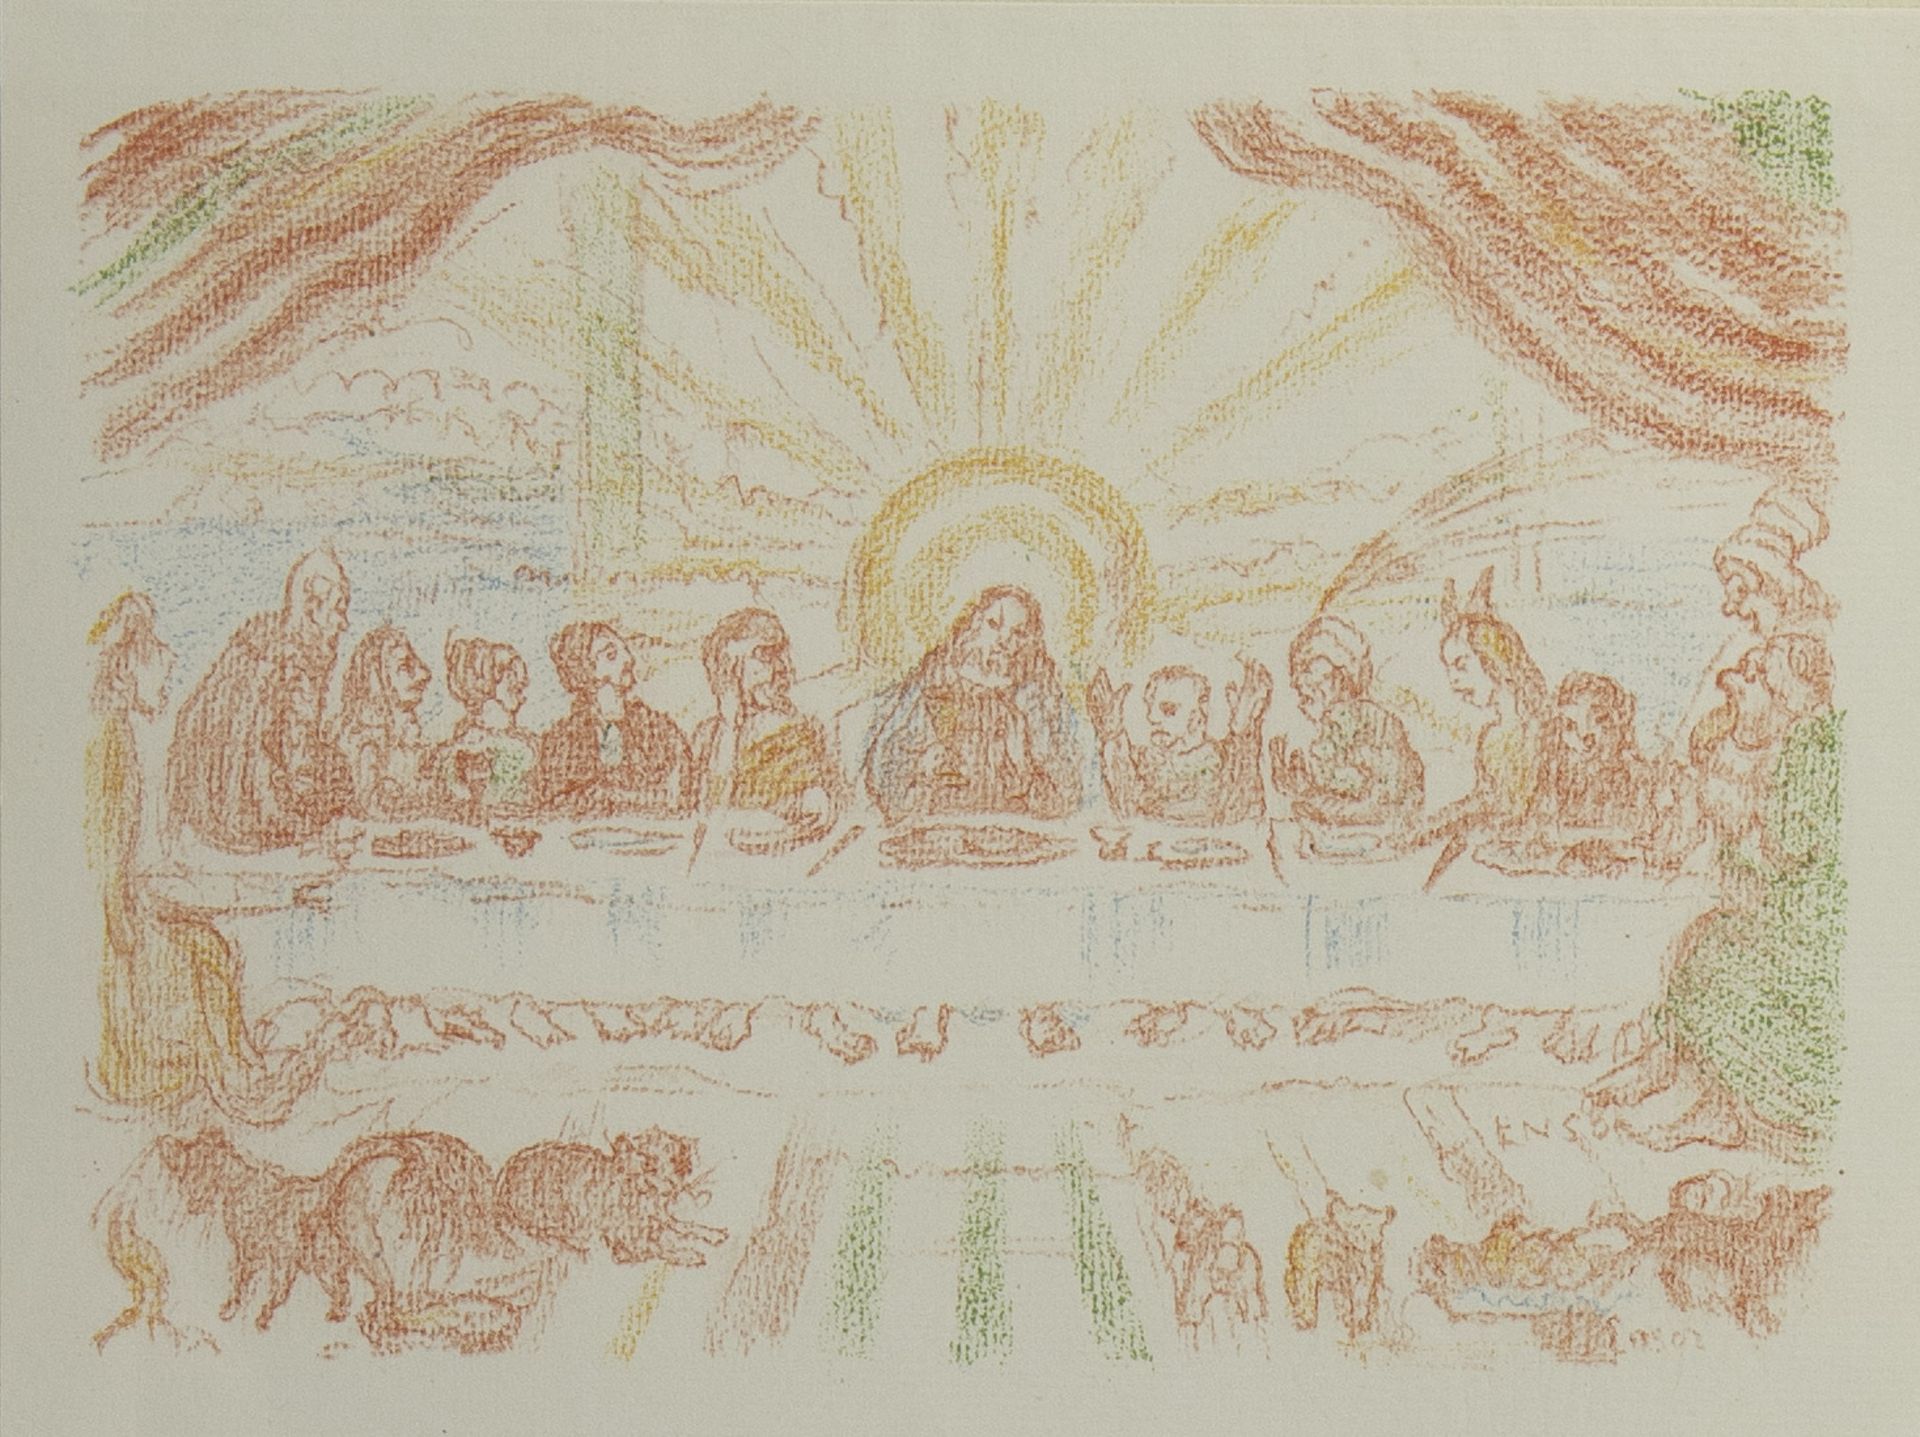 James ENSOR (1860-1949), lithograph from the series Scènes de la vie du Christ, La Cène, signed in t